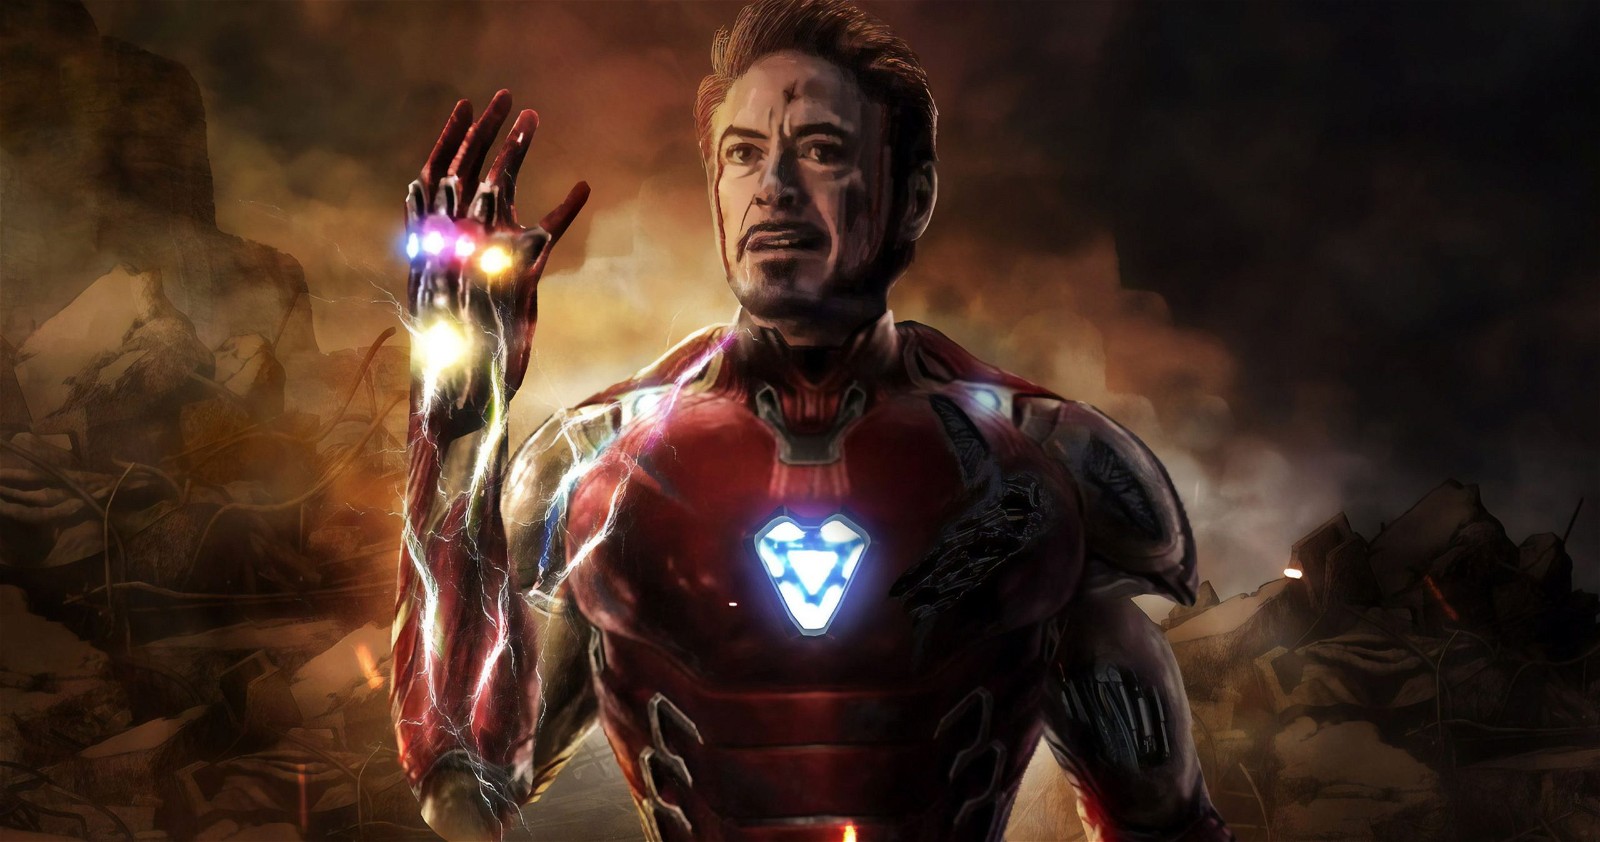 Robert Downey Jr.'s Iron Man in Avengers: Endgame (2019)